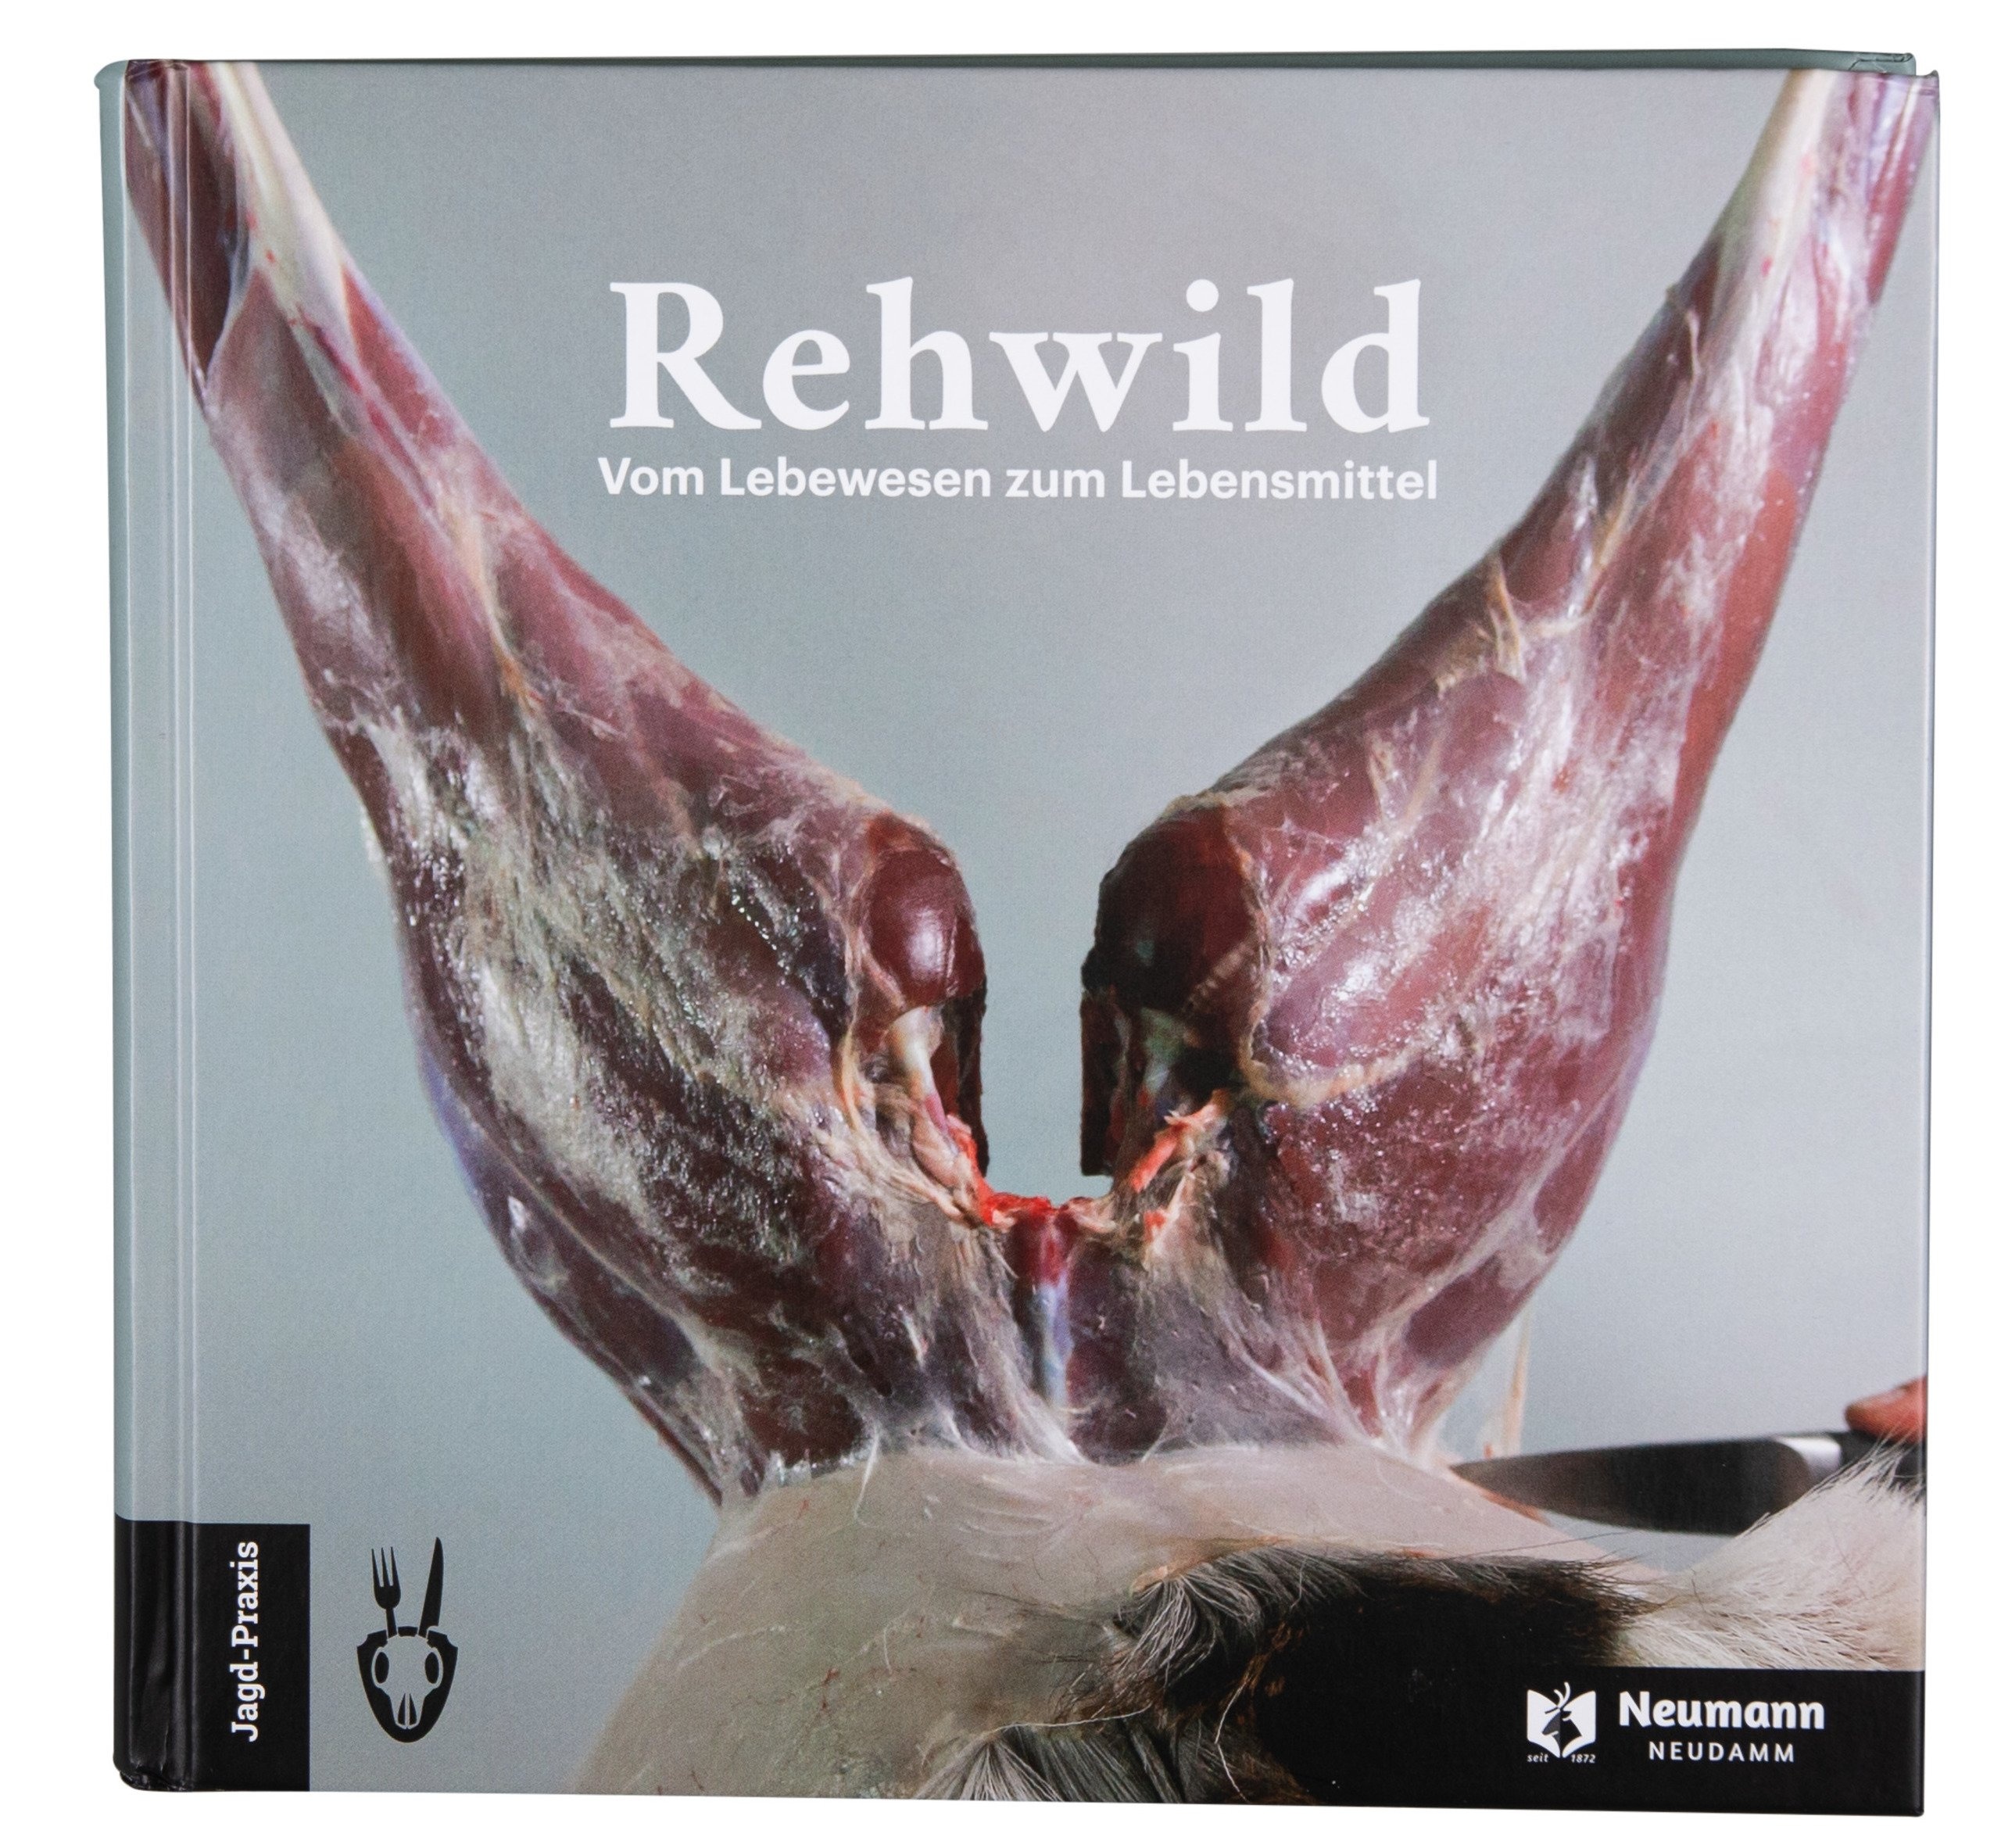 Rehwild – Vom Lebewesen zum Lebensmittel